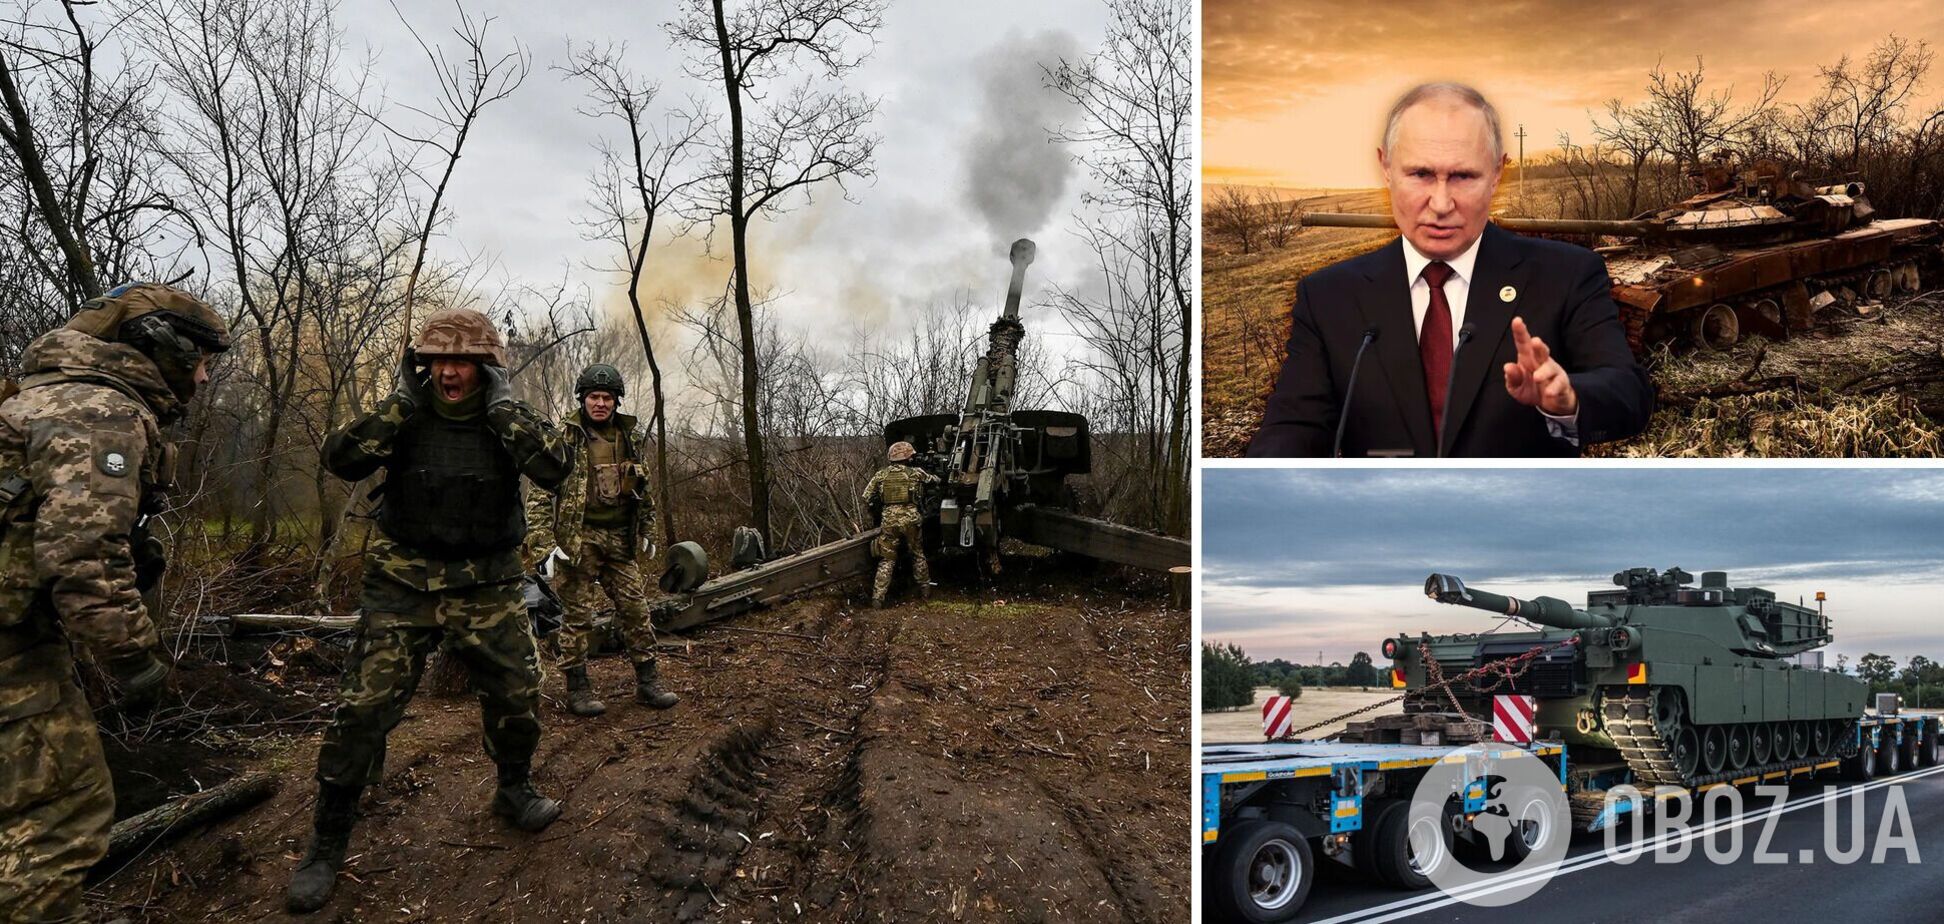 Путин хочет внушать страх и боится силы, не стоит беспокоиться из-за его 'красных линий' – Bloomberg